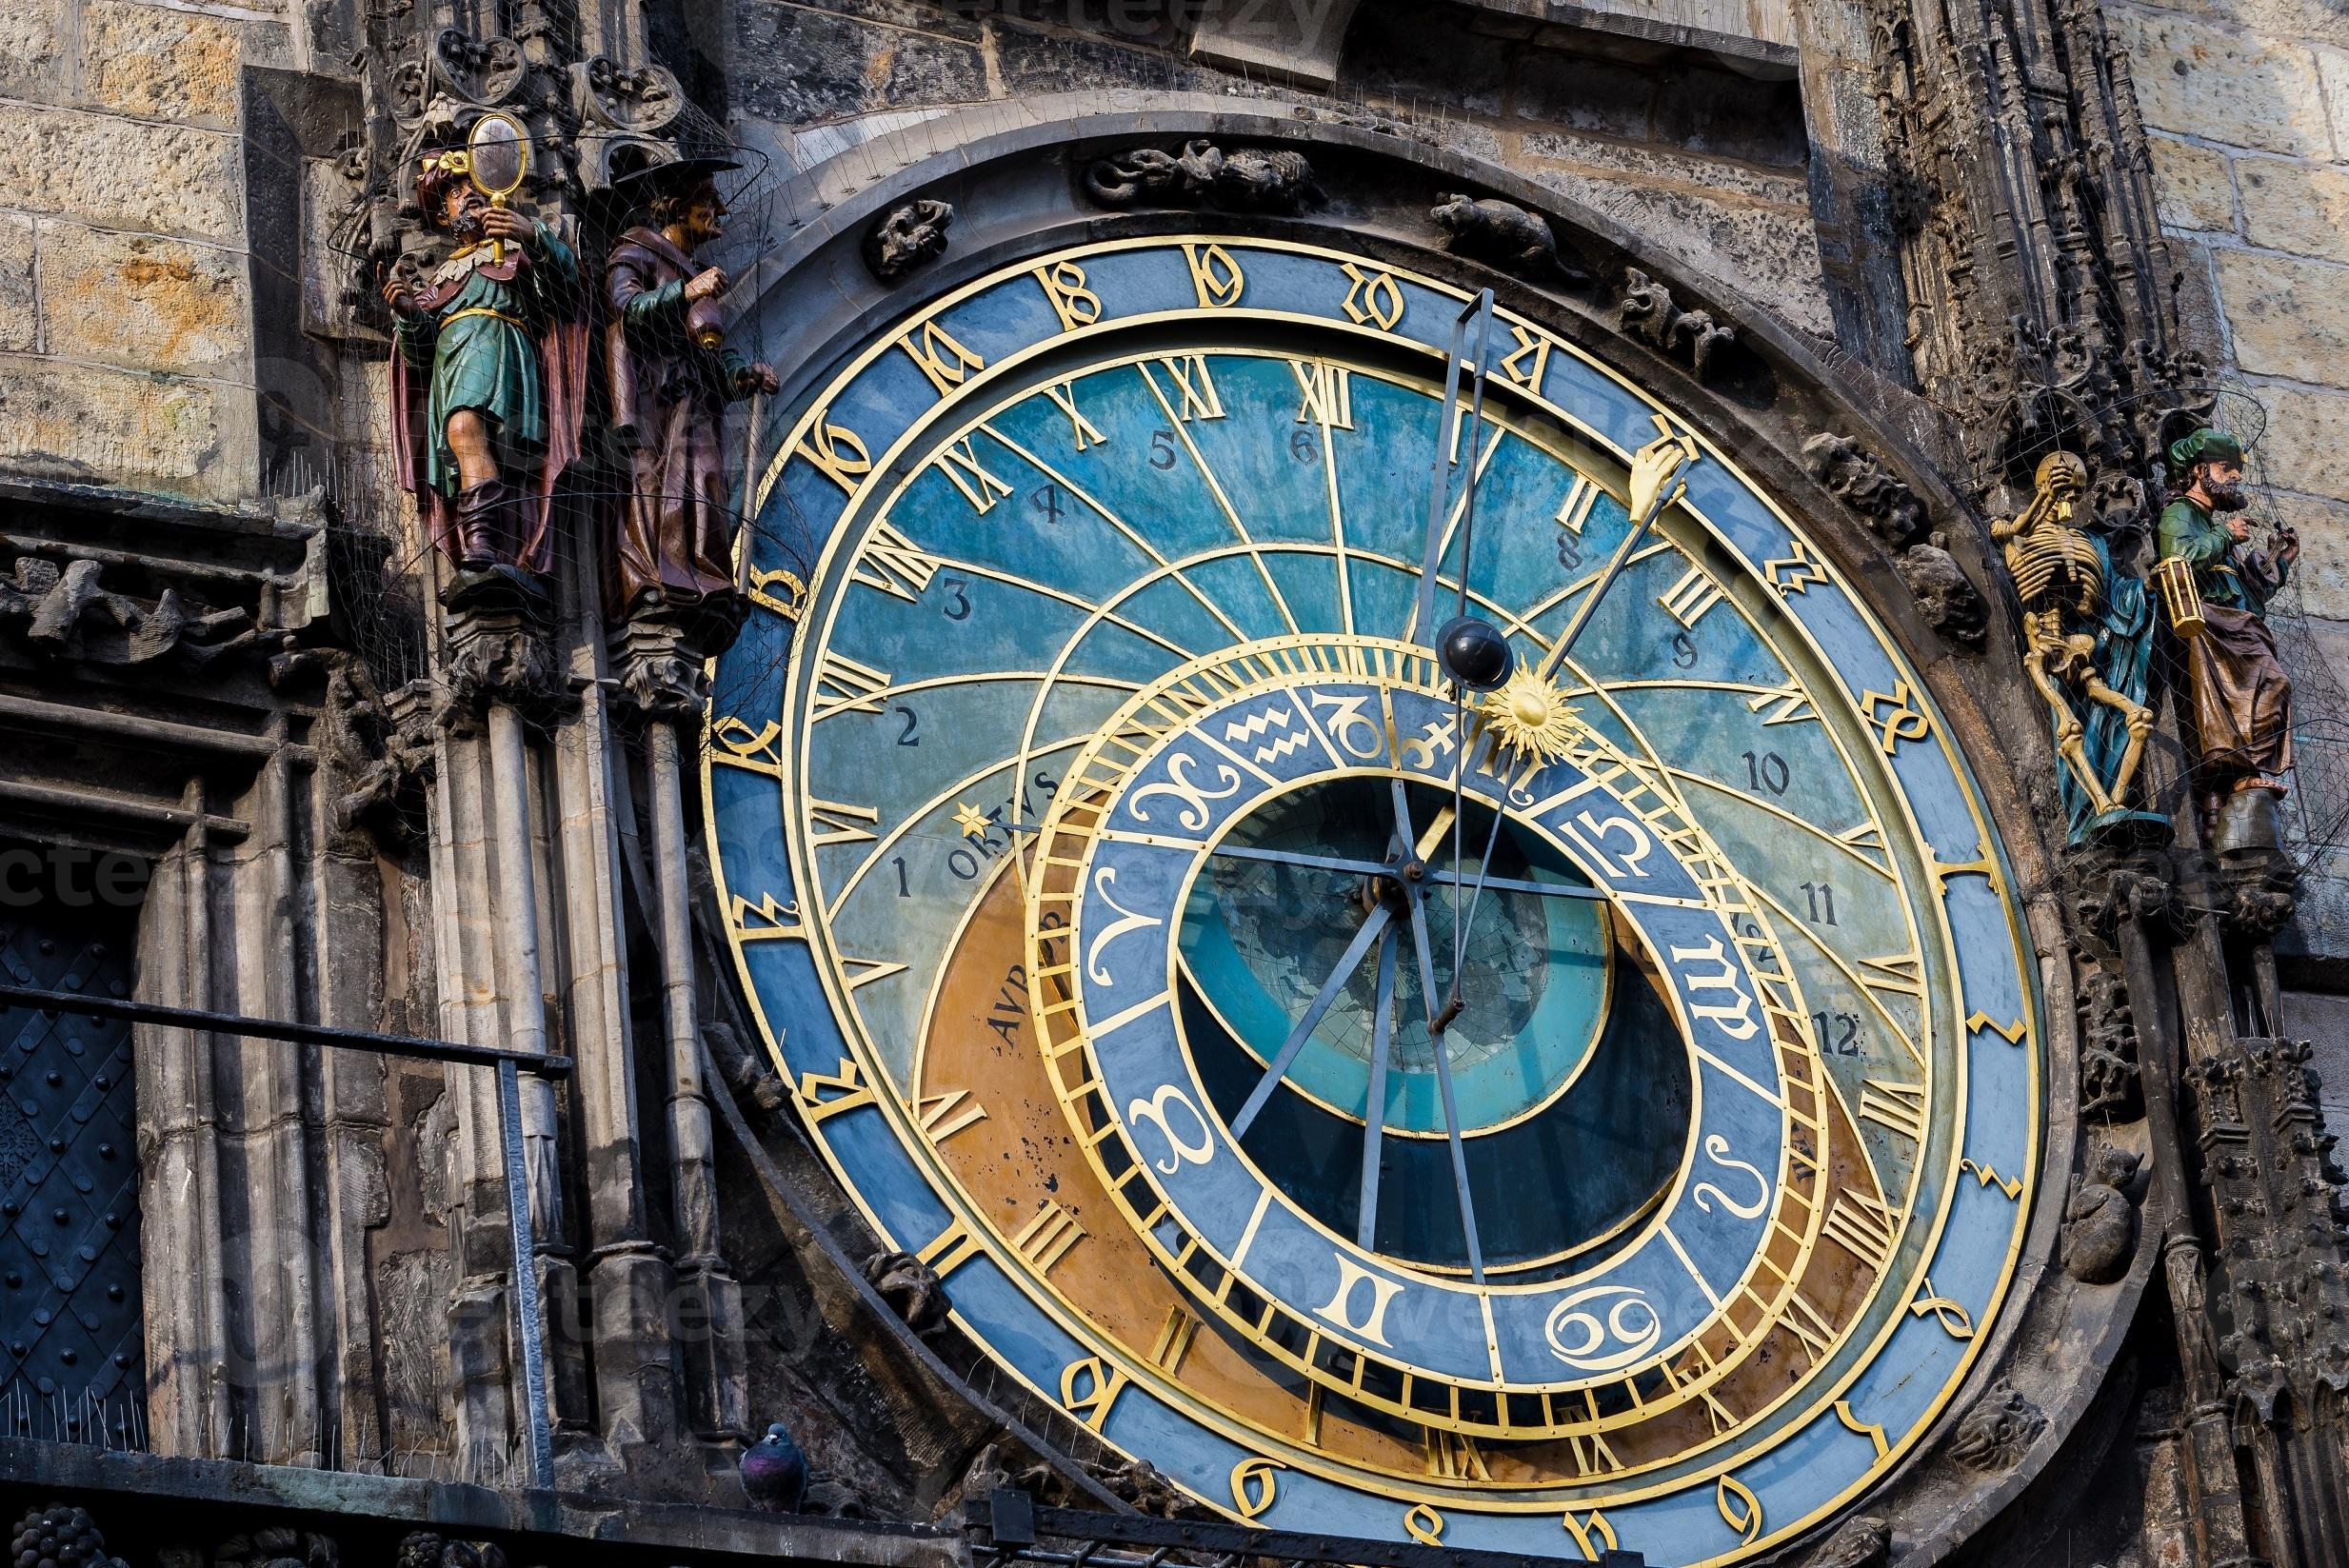 pragas astronomiska klocka (orloj) i gamla stan i Prag foto